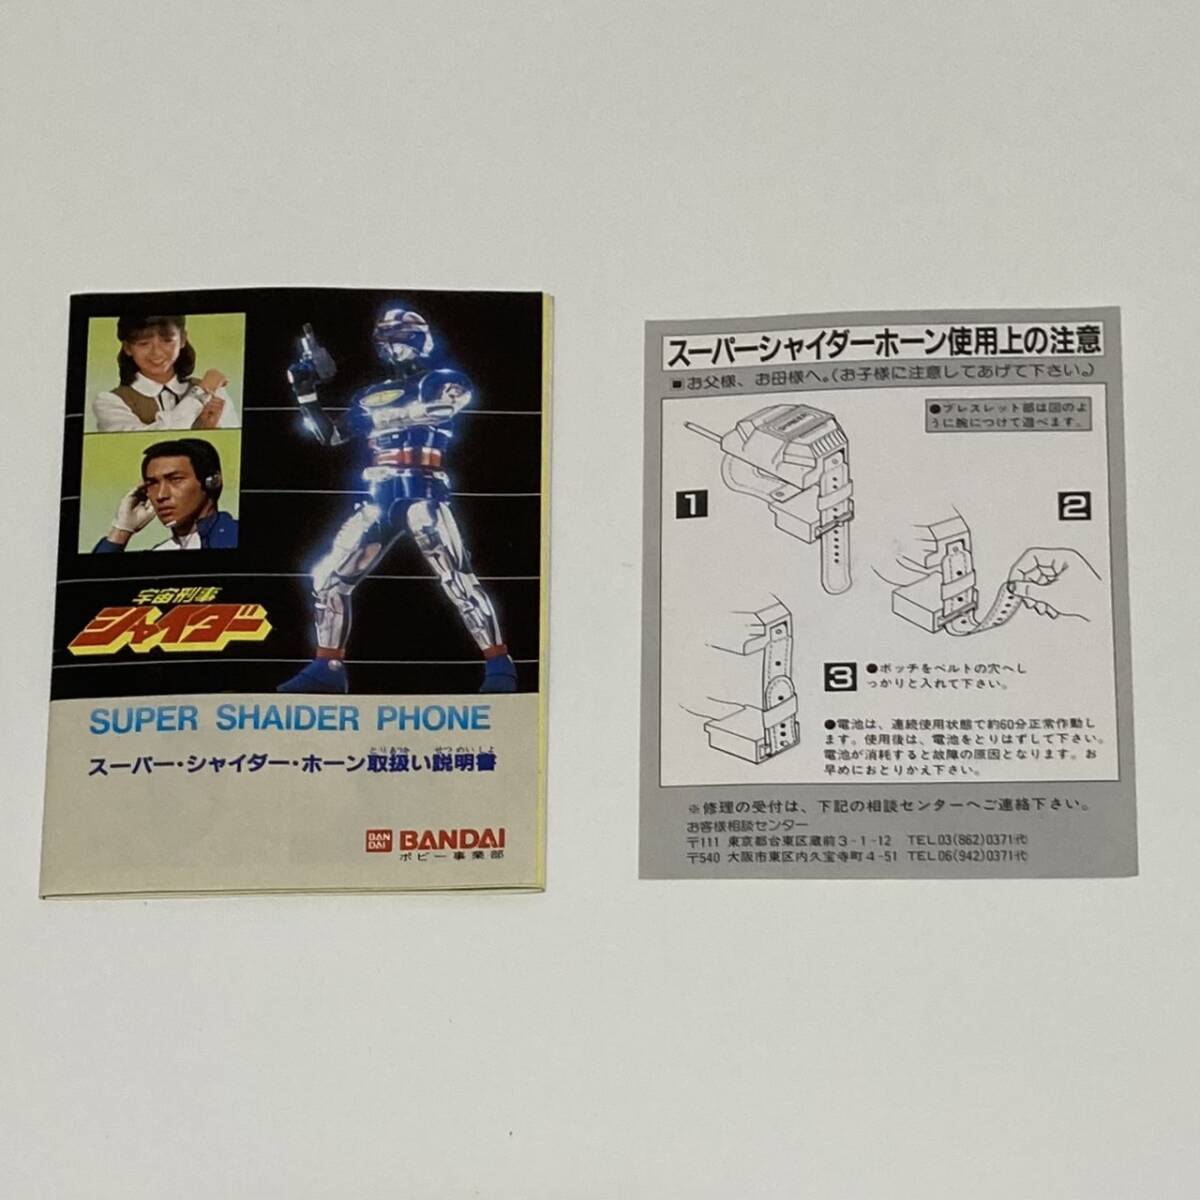 3 б/у Bandai в это время BANDAI Uchuu Keiji Shaider Showa super Shaider звуковой сигнал синий наушники JAPAN collector руководство пользователя Mike оригинальная коробка приемопередатчик 1984